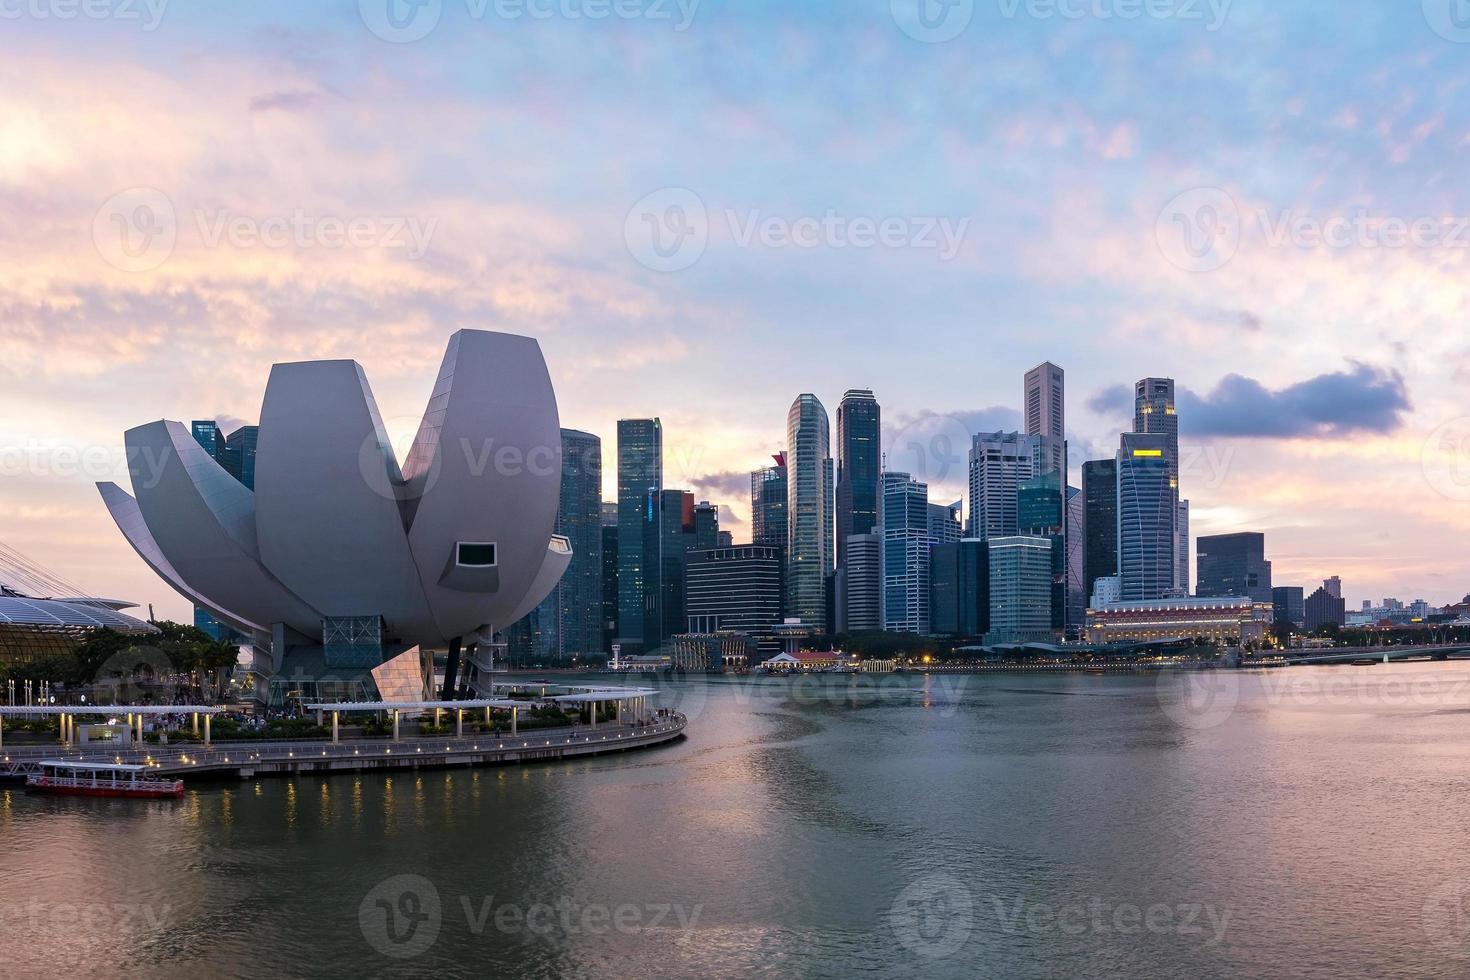 schemerscène van de zakendistrictshorizon van Singapore bij Marina Bay. foto